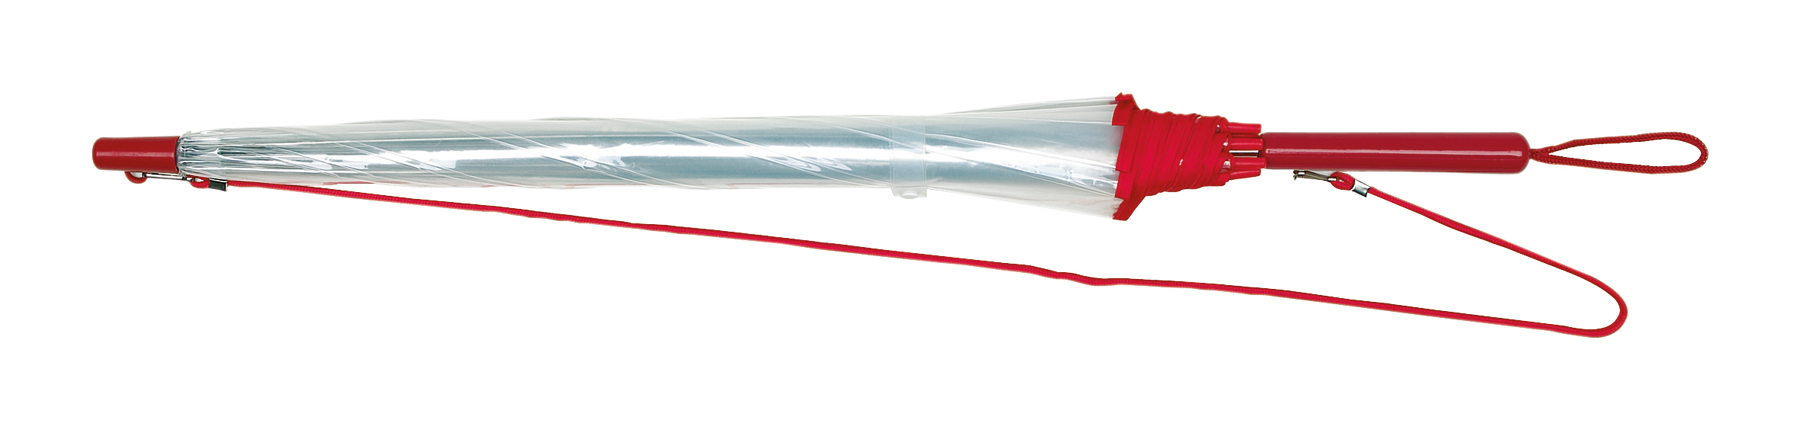 Parasol automatyczny PANORAMIC, czerwony, transparentny